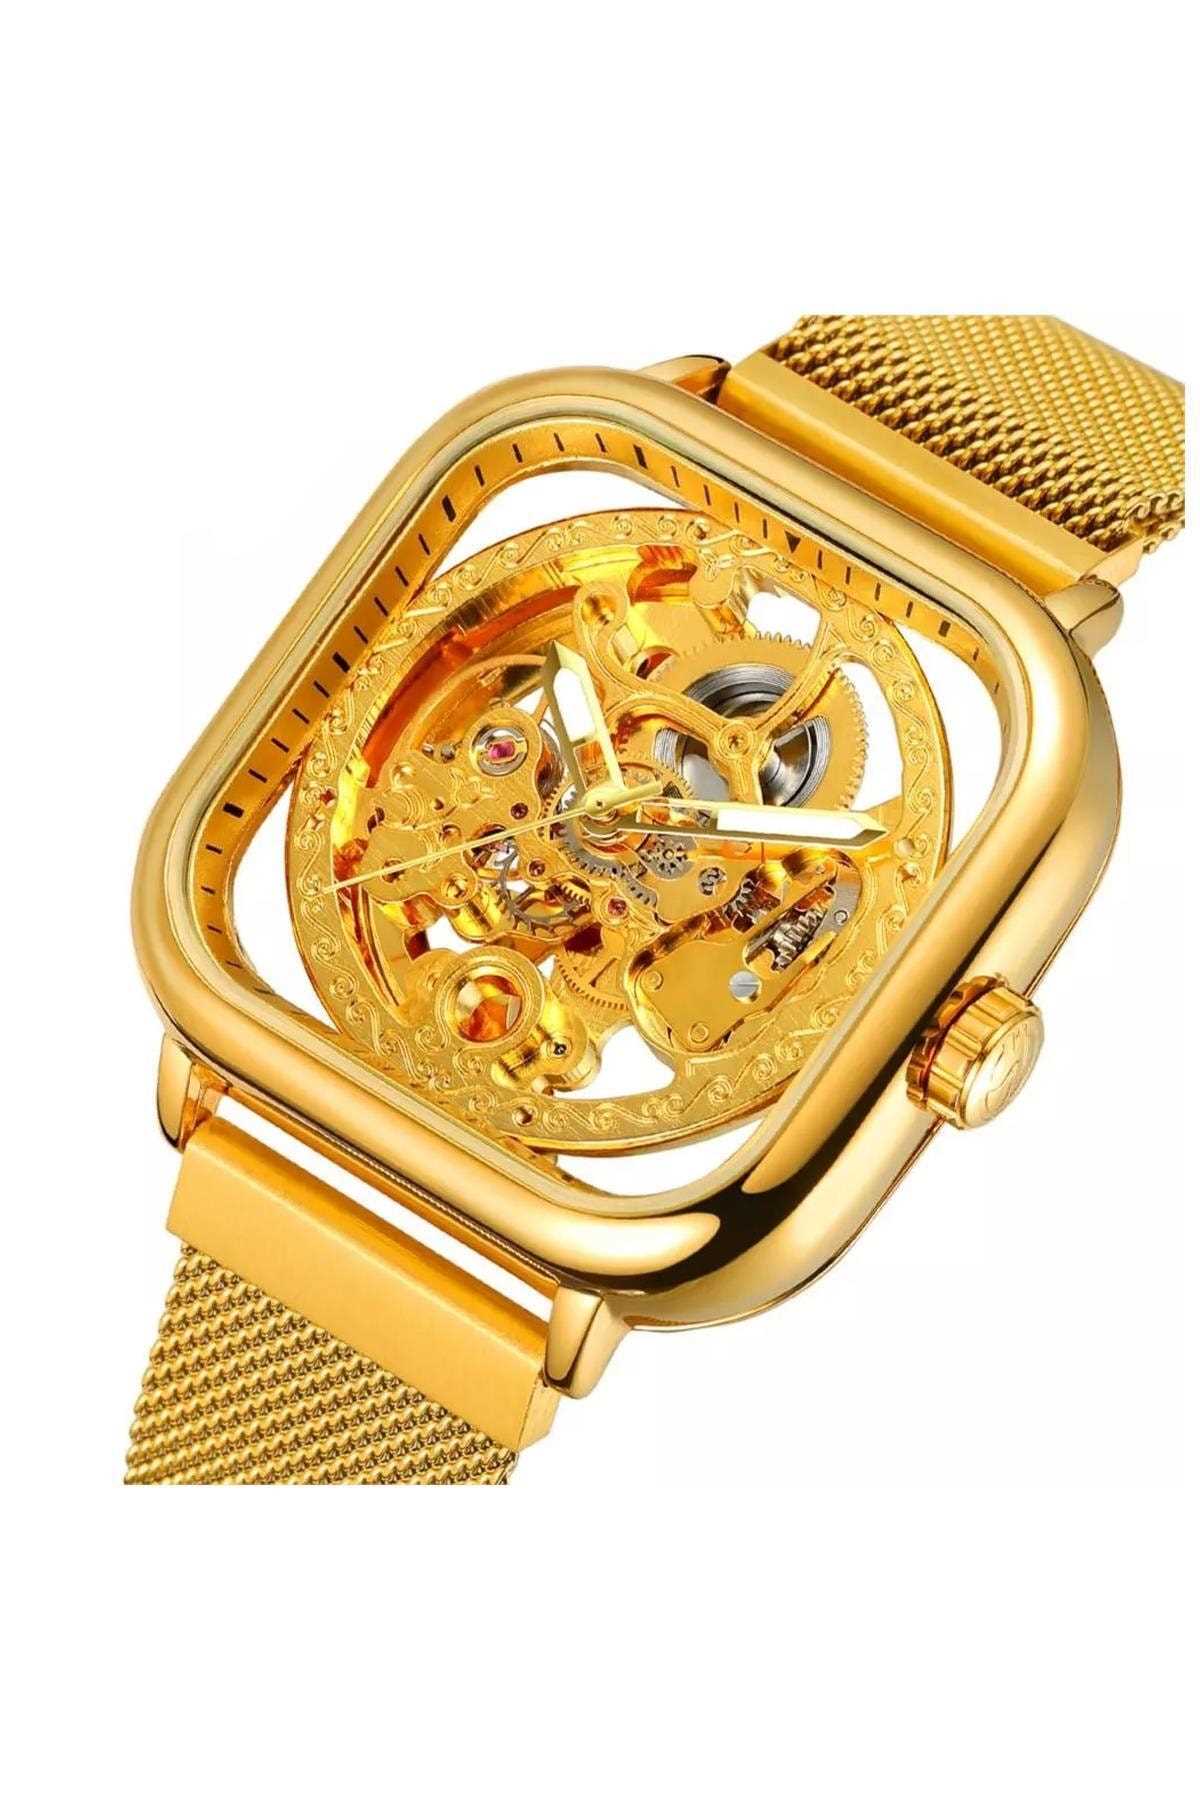 خرید ساعت مردانه جدید برند Forsining رنگ طلایی ty89382450